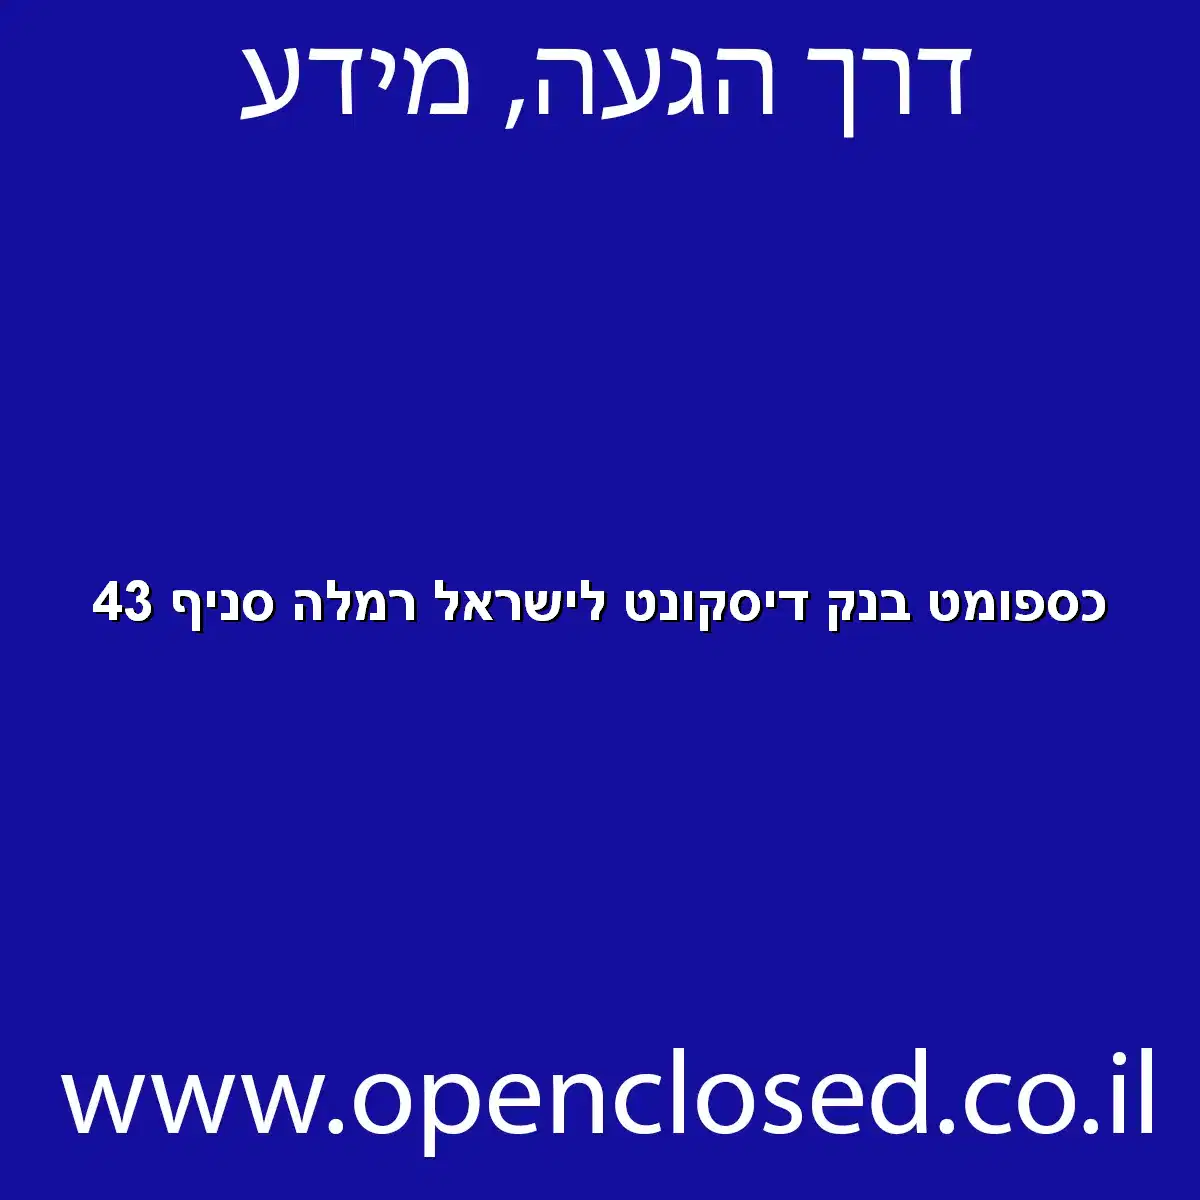 כספומט בנק דיסקונט לישראל רמלה סניף 43